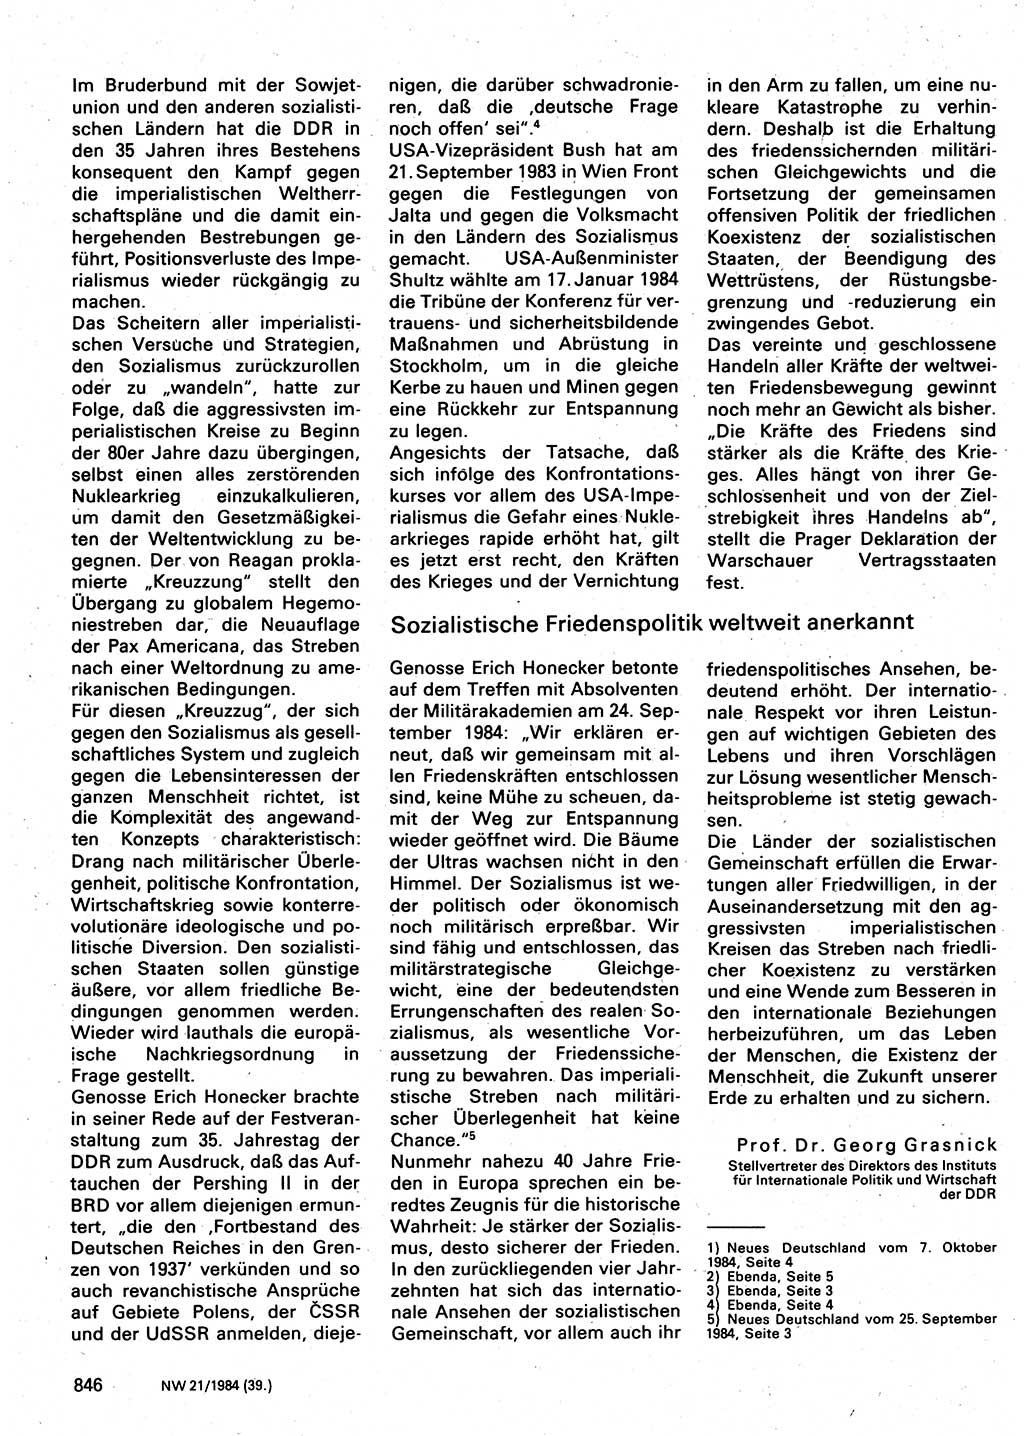 Neuer Weg (NW), Organ des Zentralkomitees (ZK) der SED (Sozialistische Einheitspartei Deutschlands) für Fragen des Parteilebens, 39. Jahrgang [Deutsche Demokratische Republik (DDR)] 1984, Seite 846 (NW ZK SED DDR 1984, S. 846)